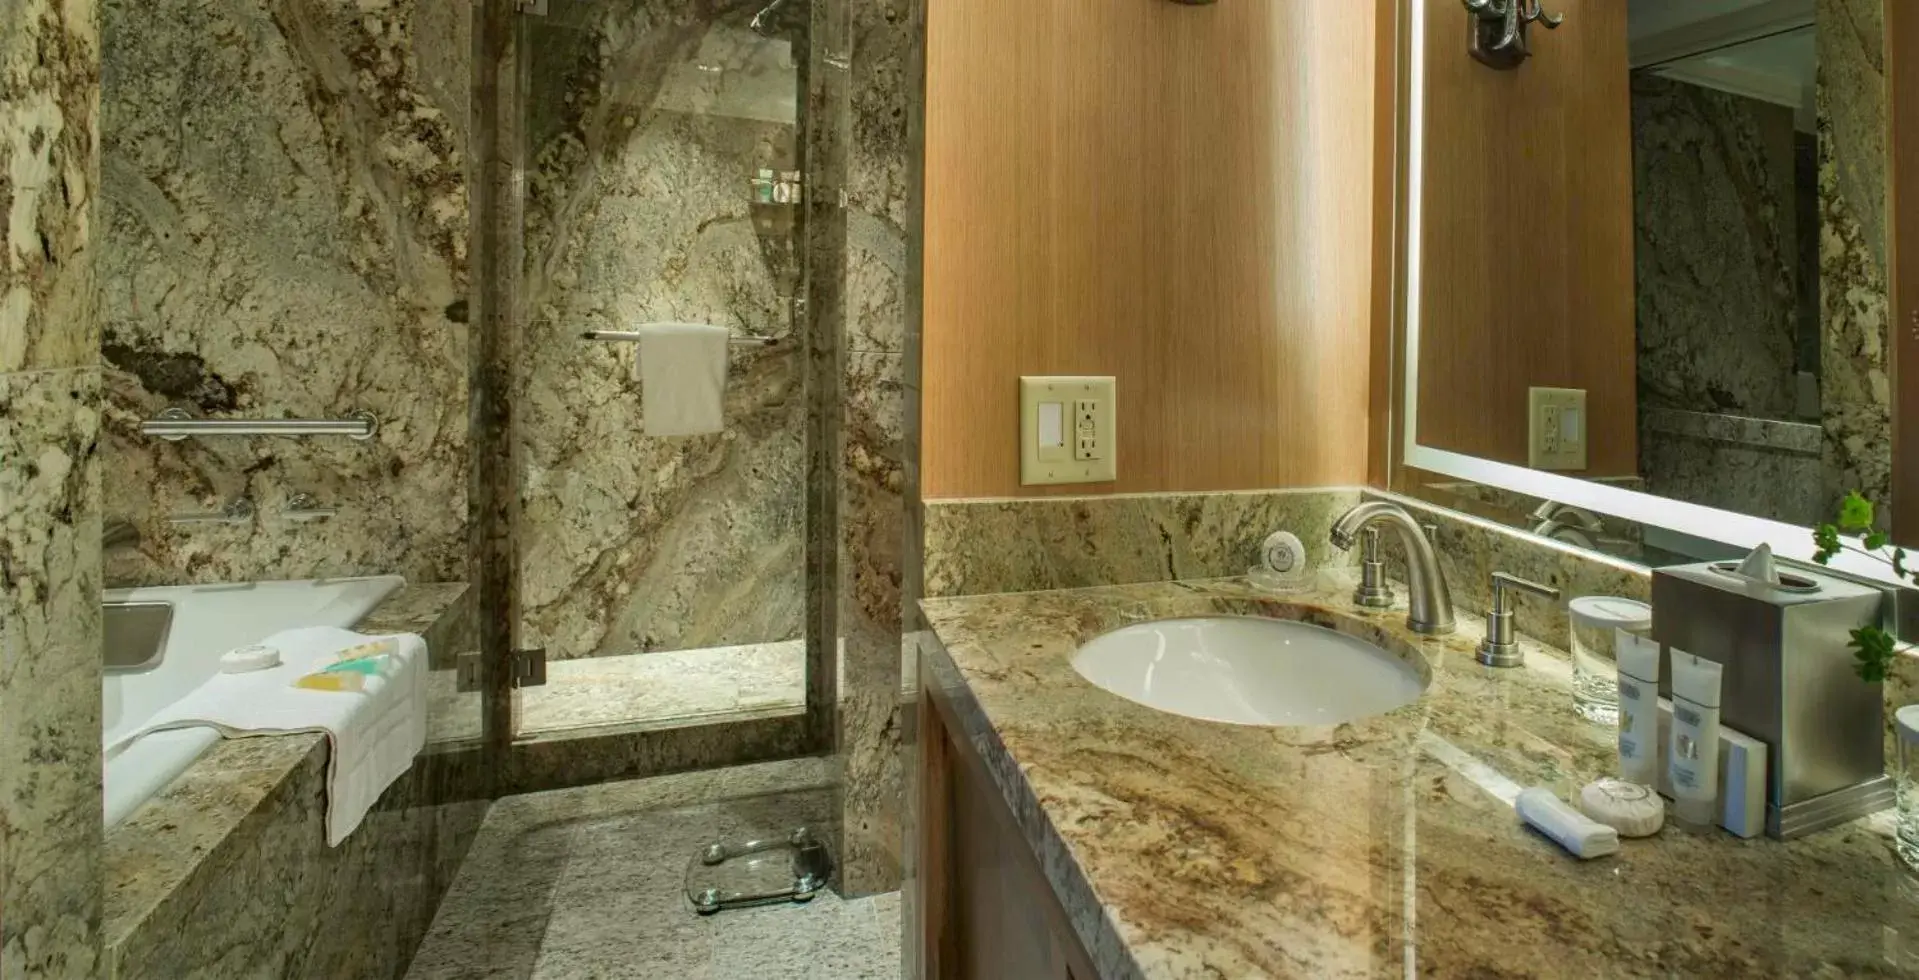 Bathroom in Sun Valley Resort